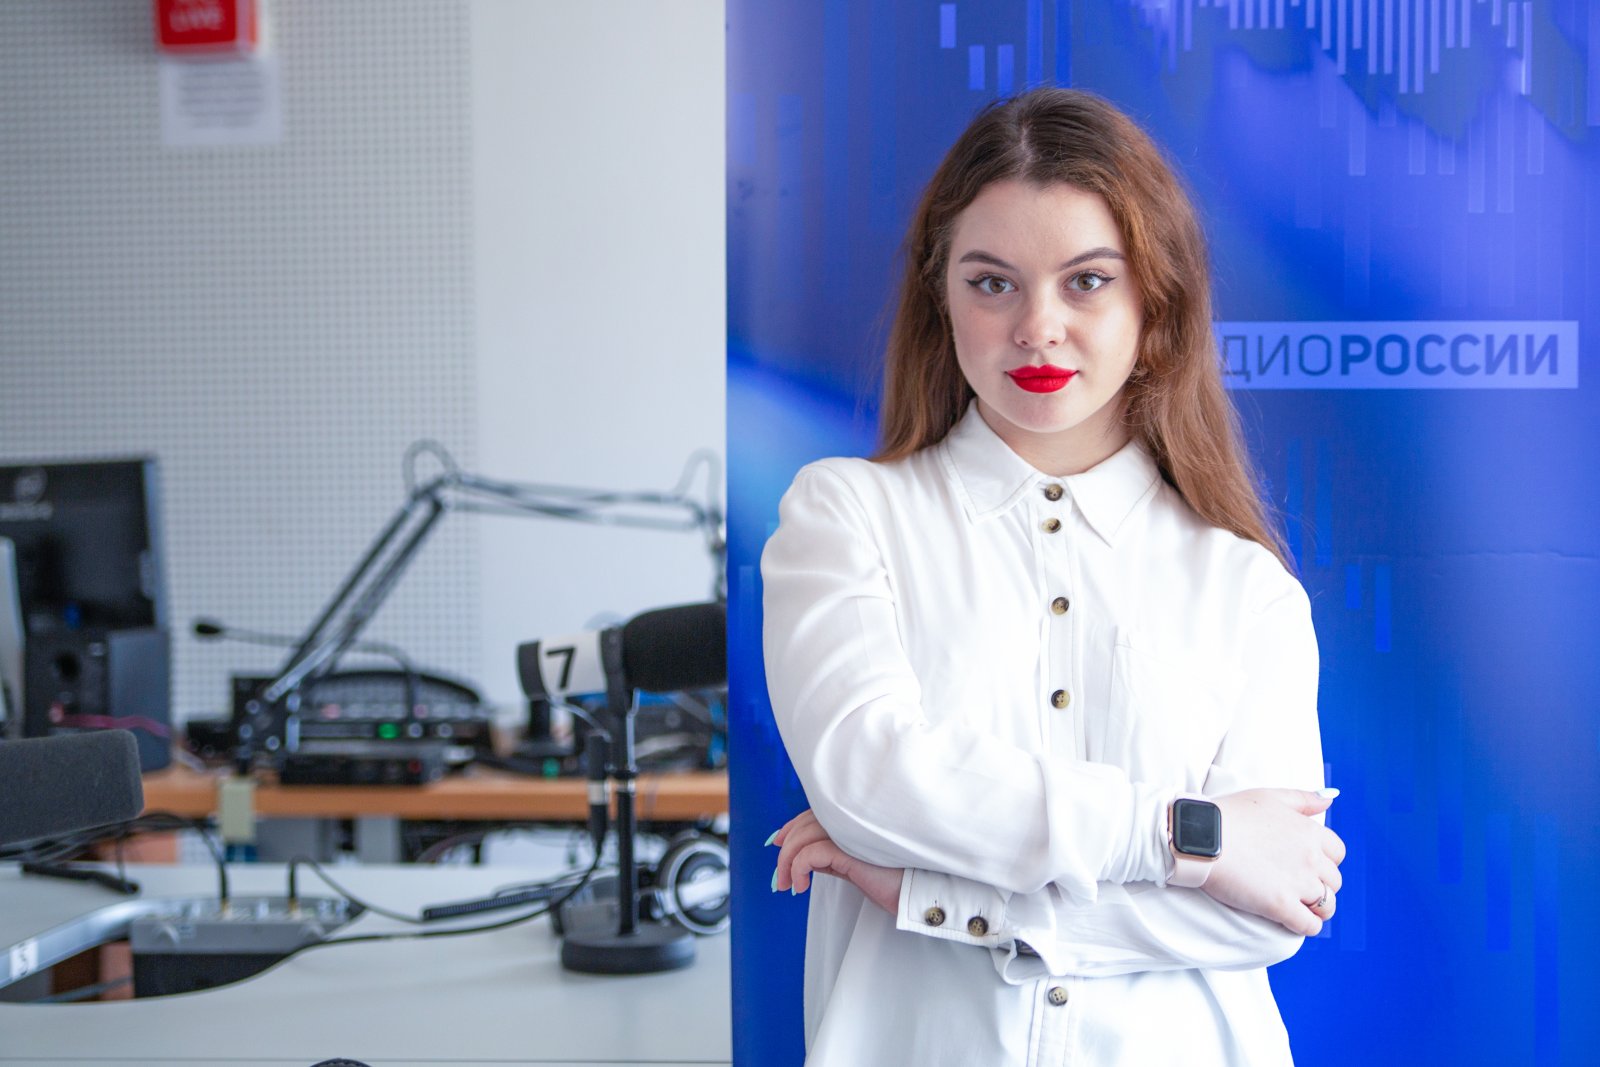 Алина Сивенкова, корреспондент службы радиовещания ГТРК "Томск"